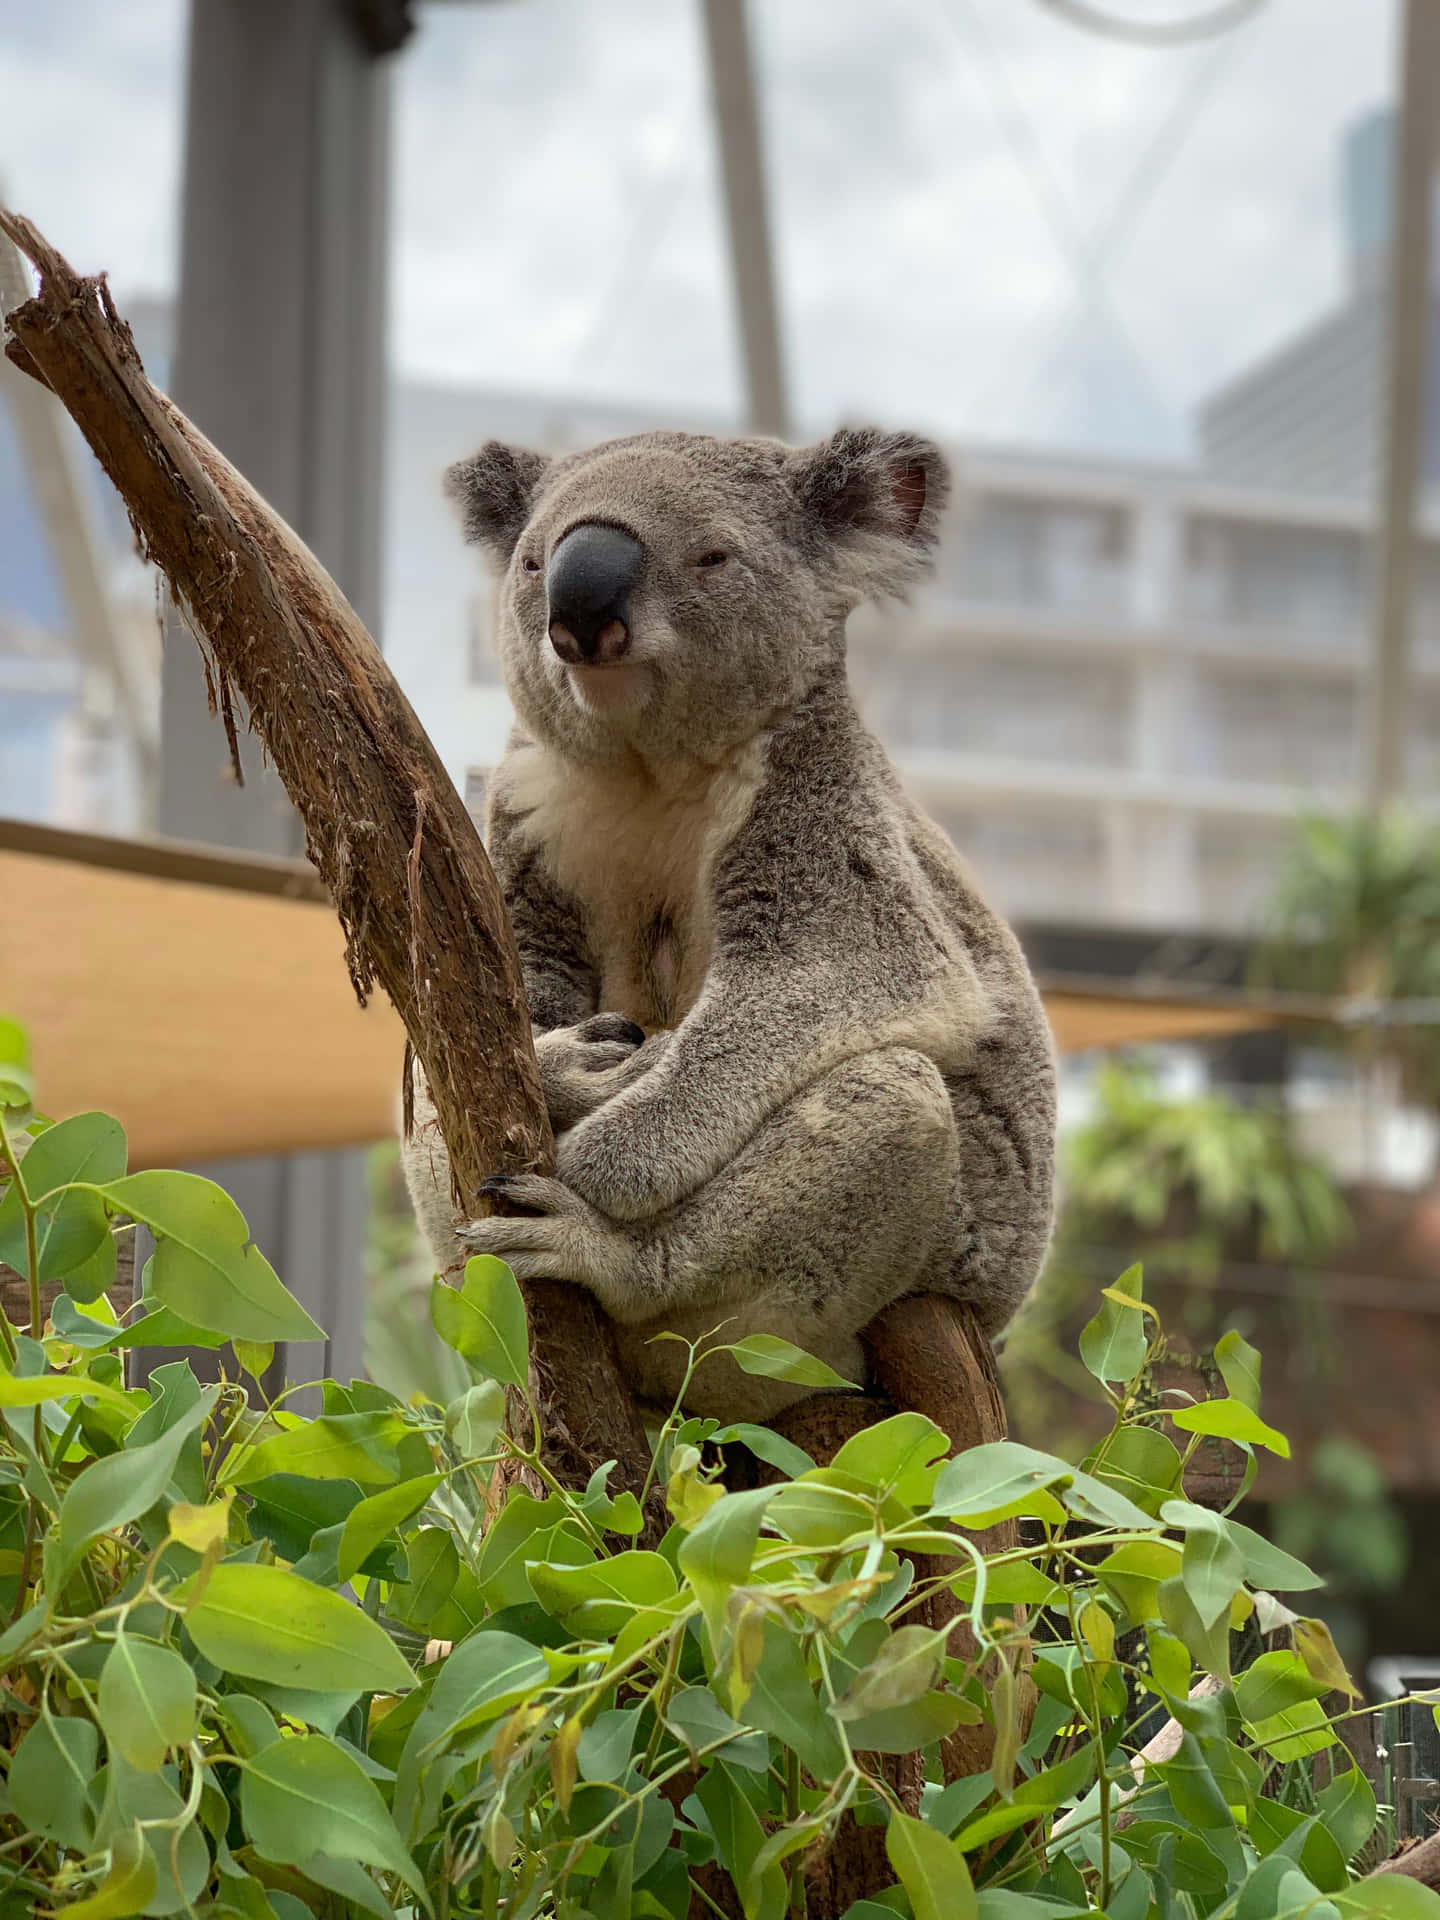 Enchanting Glimpse Of A Koala